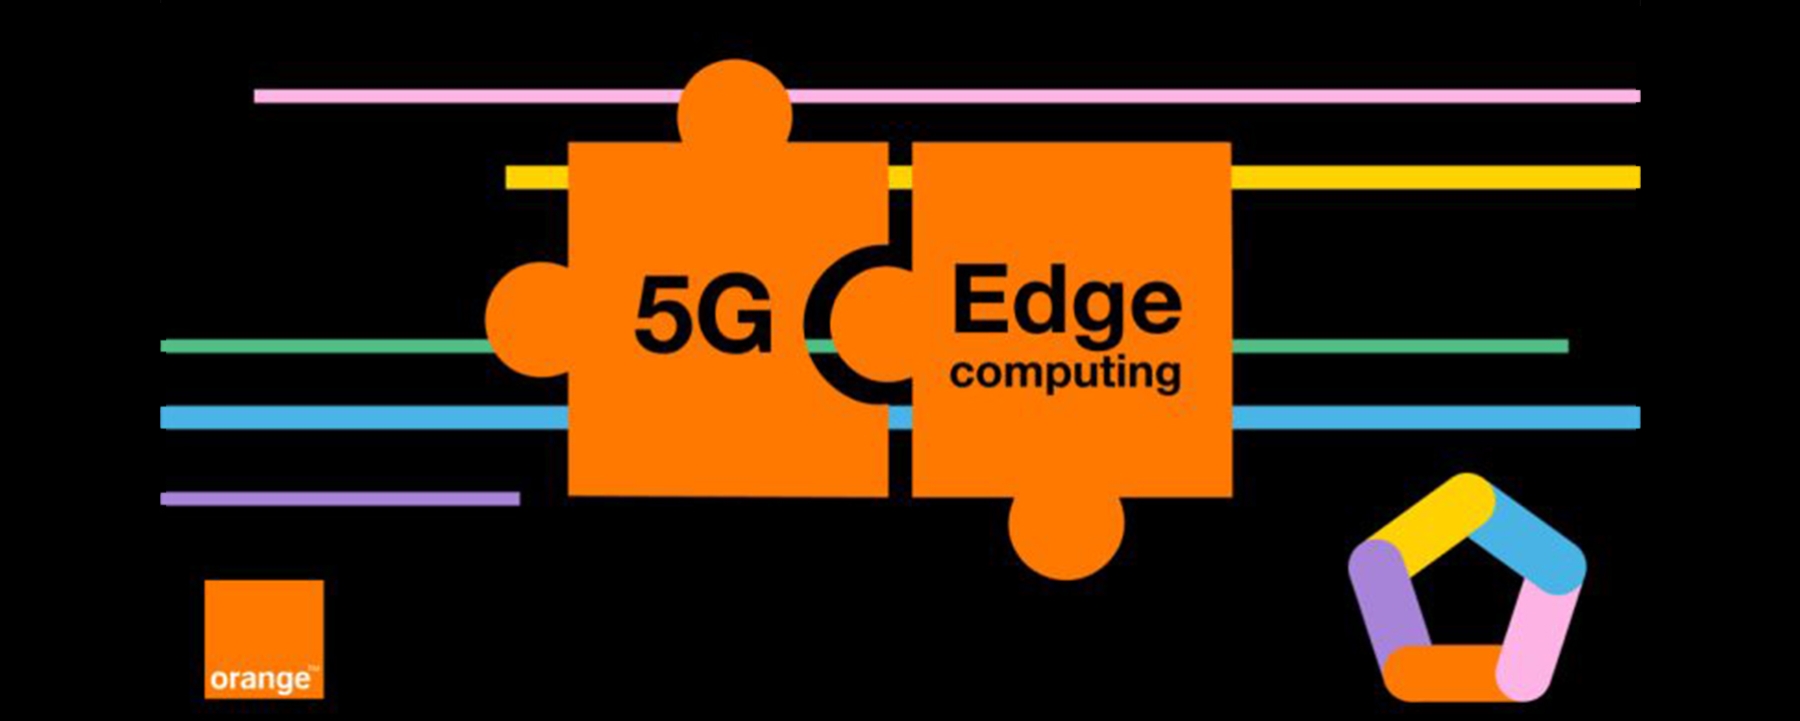 La combinaison de la 5G et de l'Edge computing révolutionne tous les secteurs